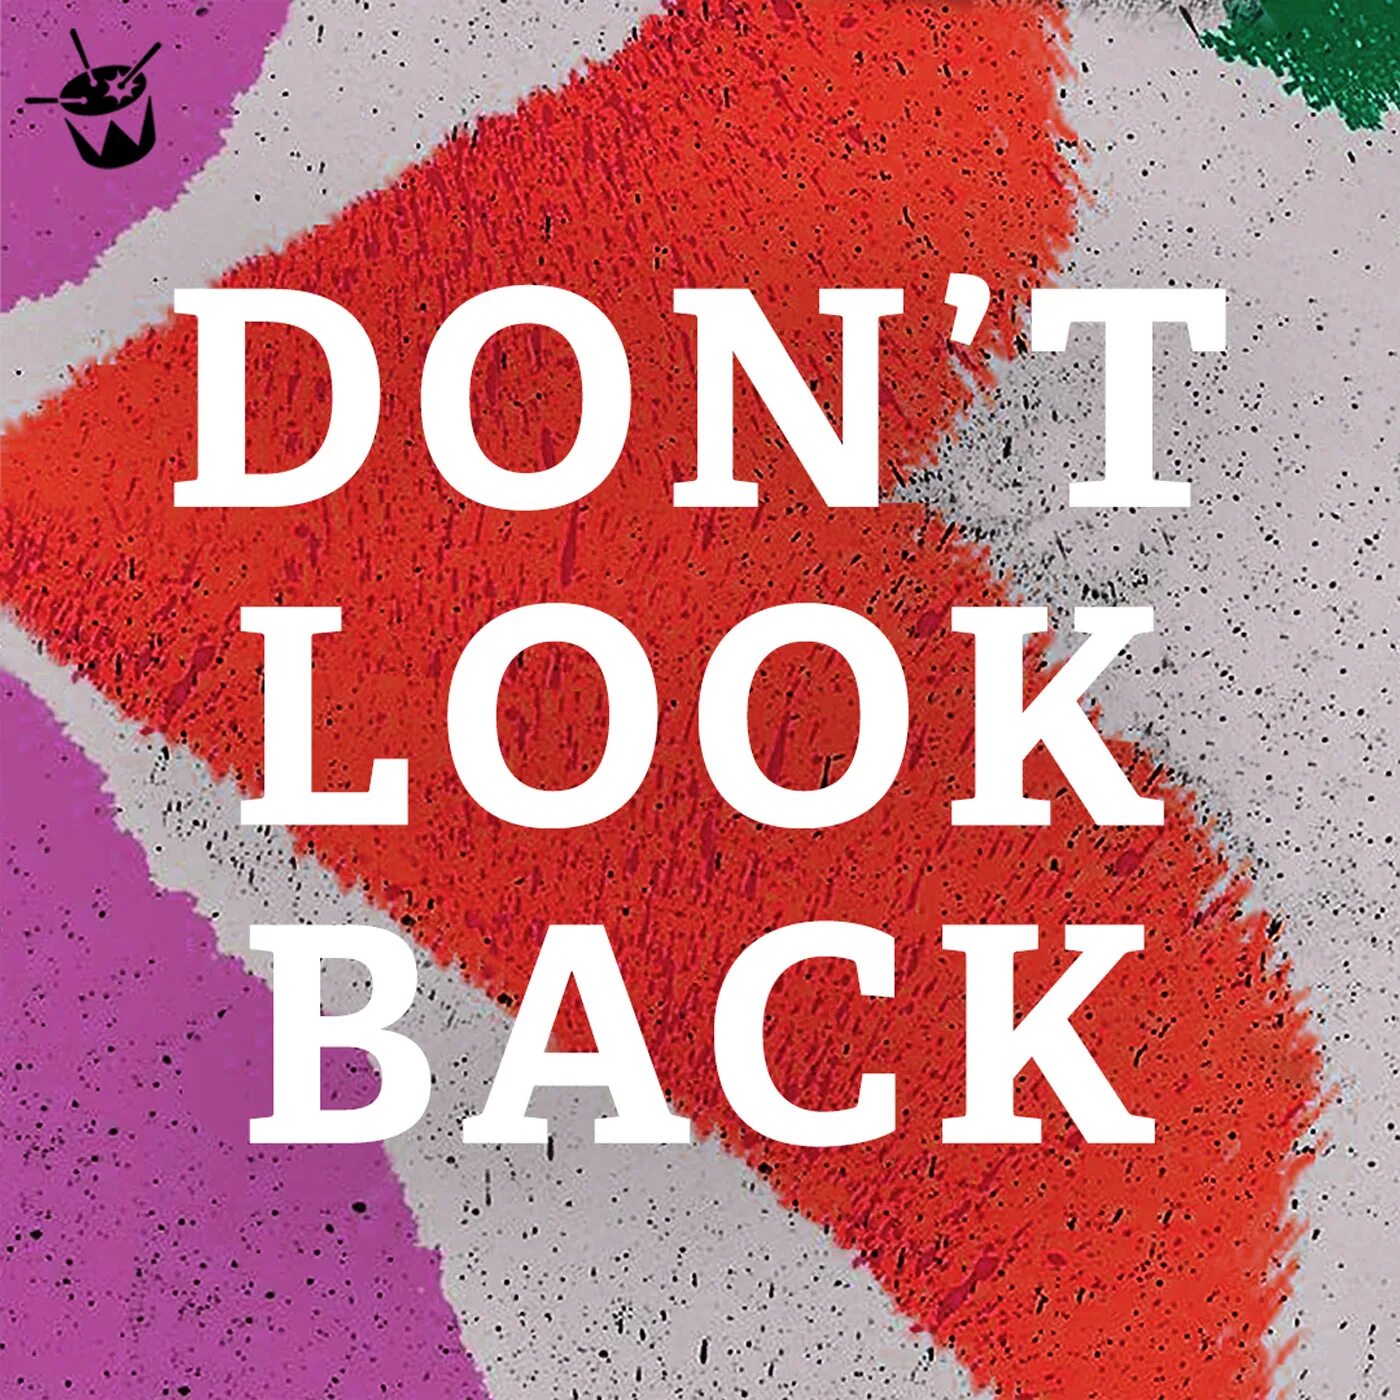 Don t look. Don t look back. Don't look back картинка. Ава don't look back. Dont back